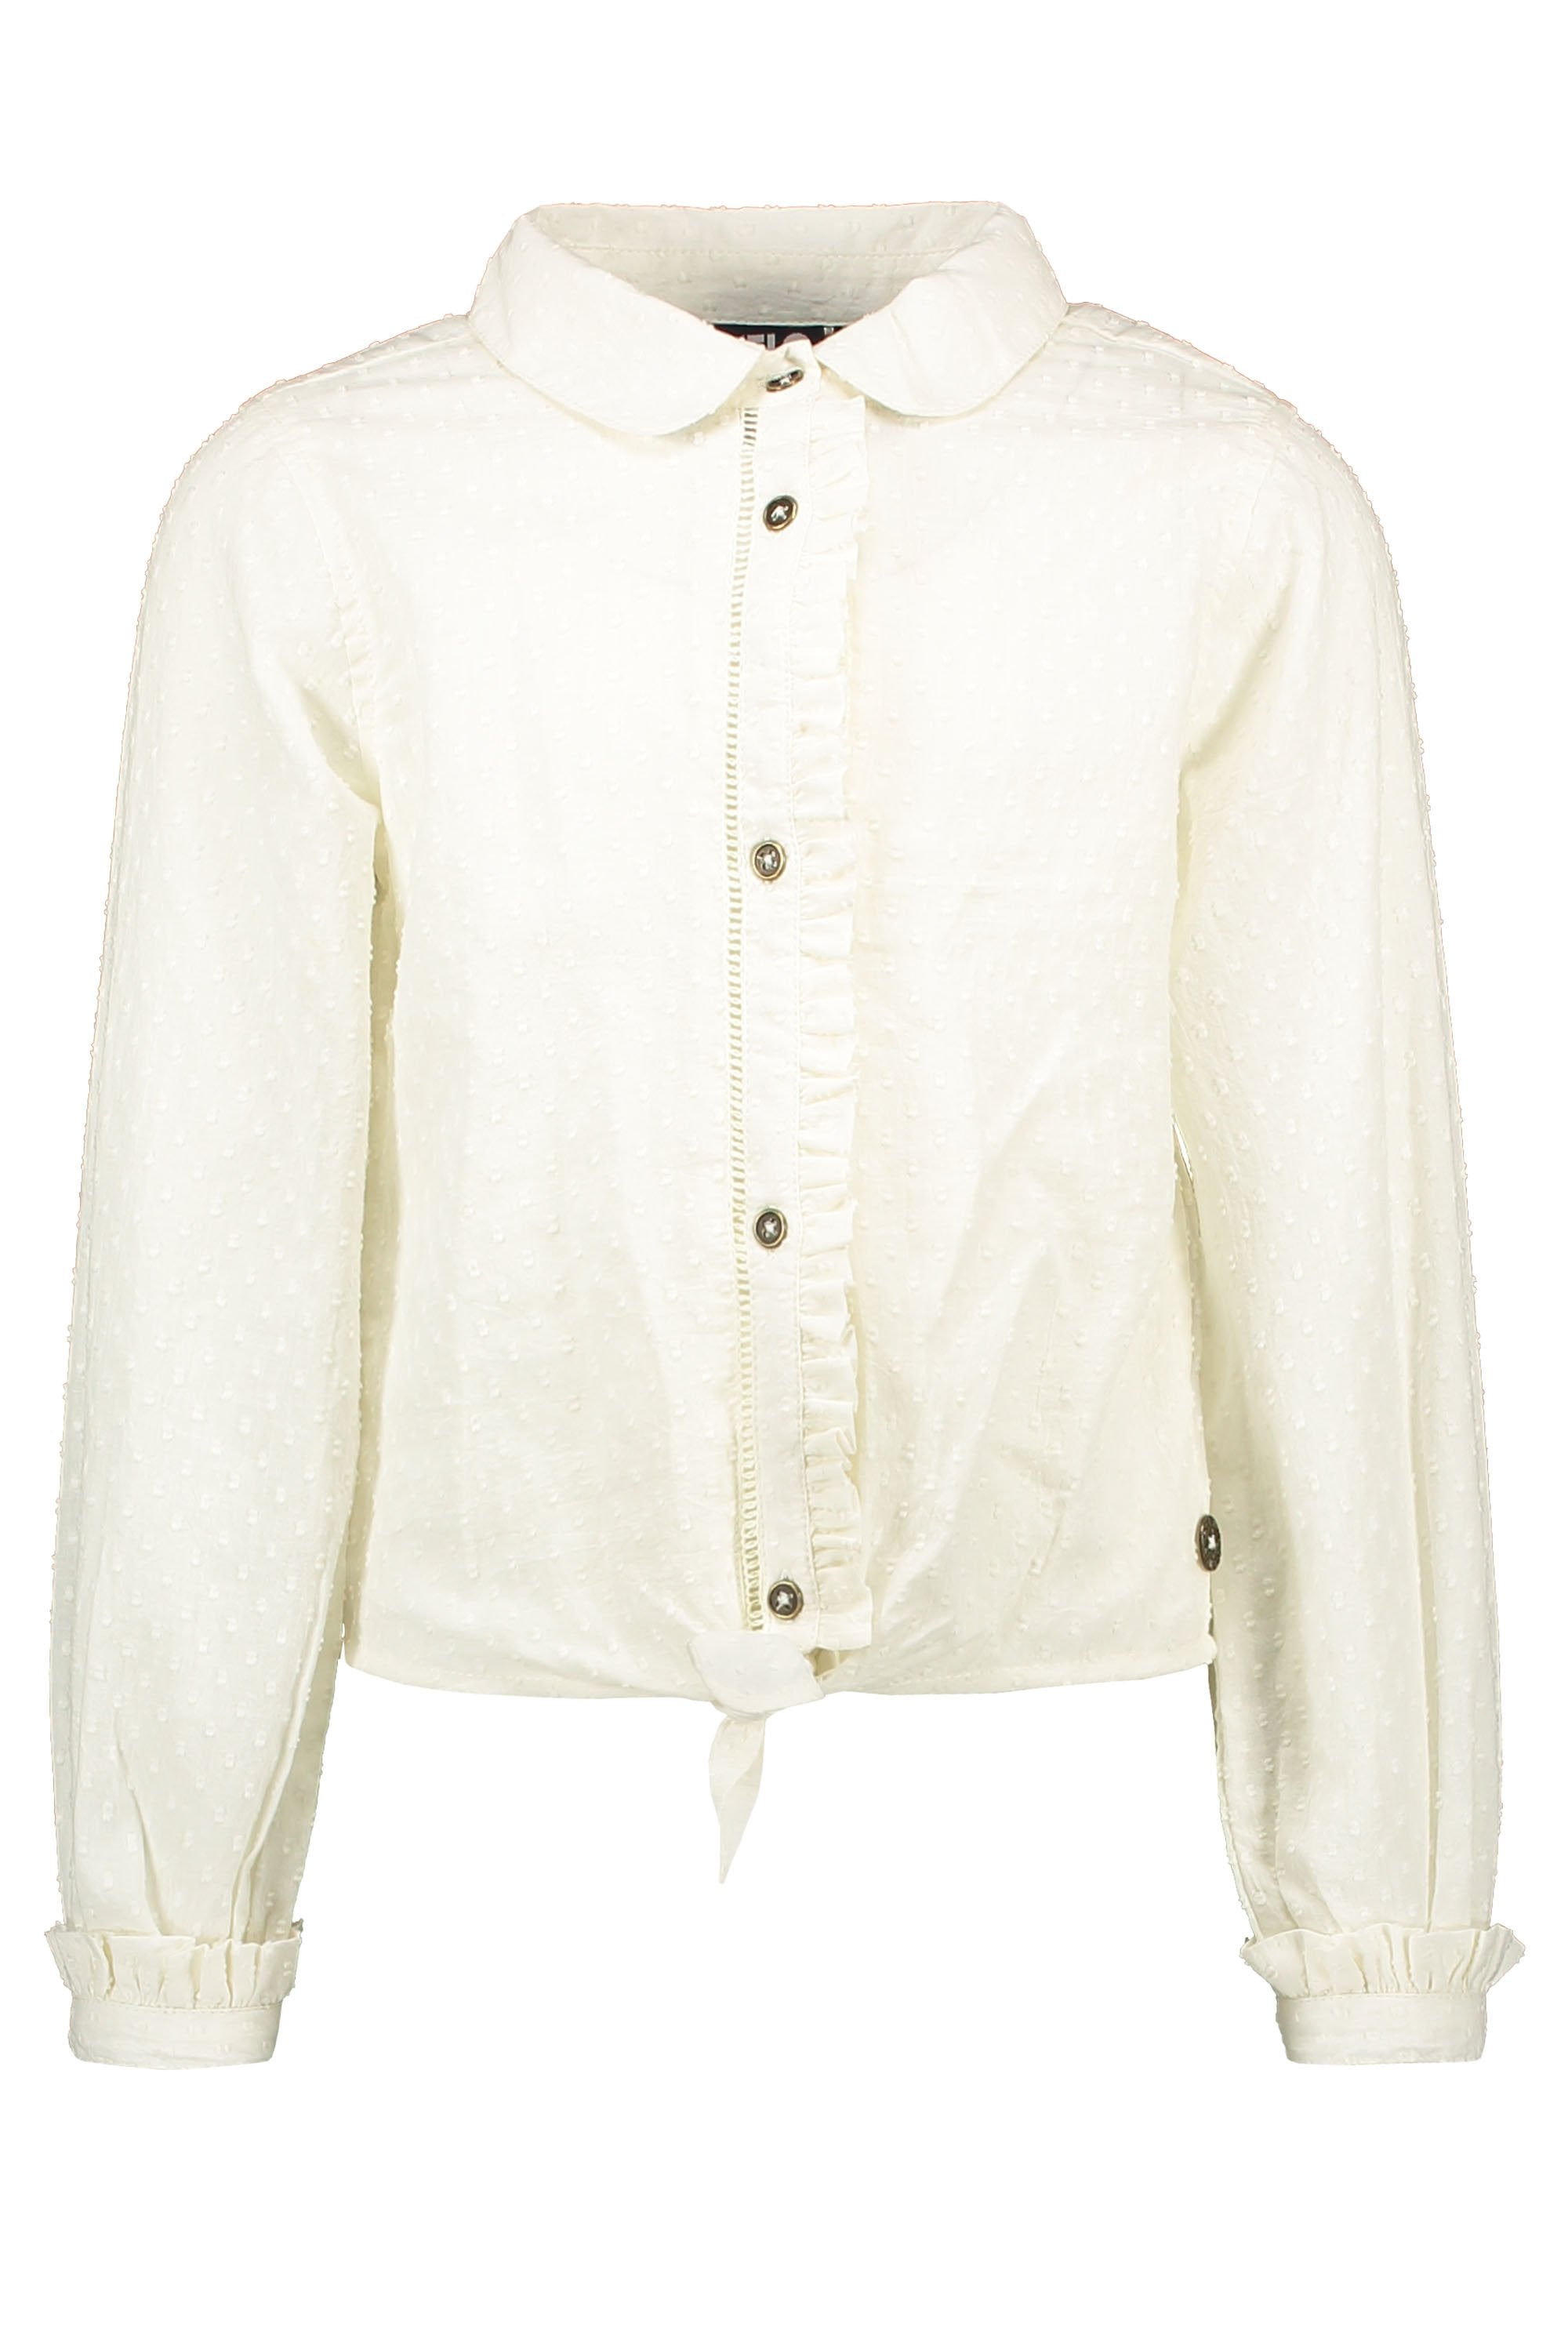 Meisjes Flo girls off white knotted blouse van Like Flo in de kleur Off white in maat 140.